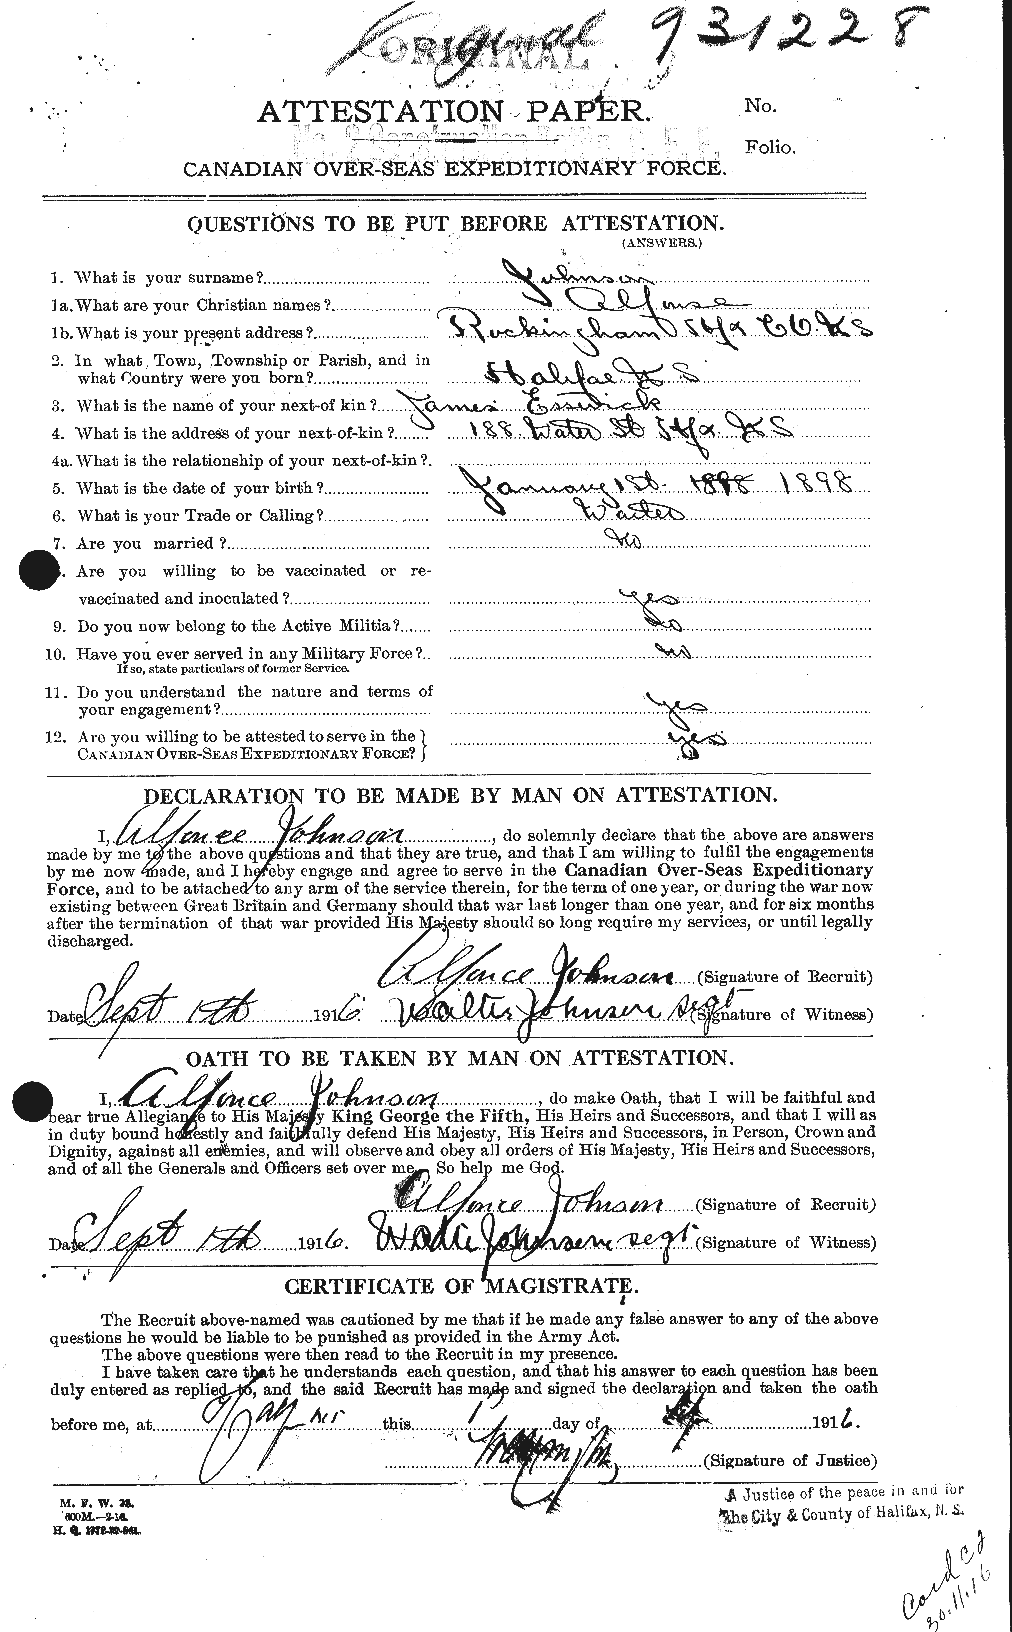 Dossiers du Personnel de la Première Guerre mondiale - CEC 421166a